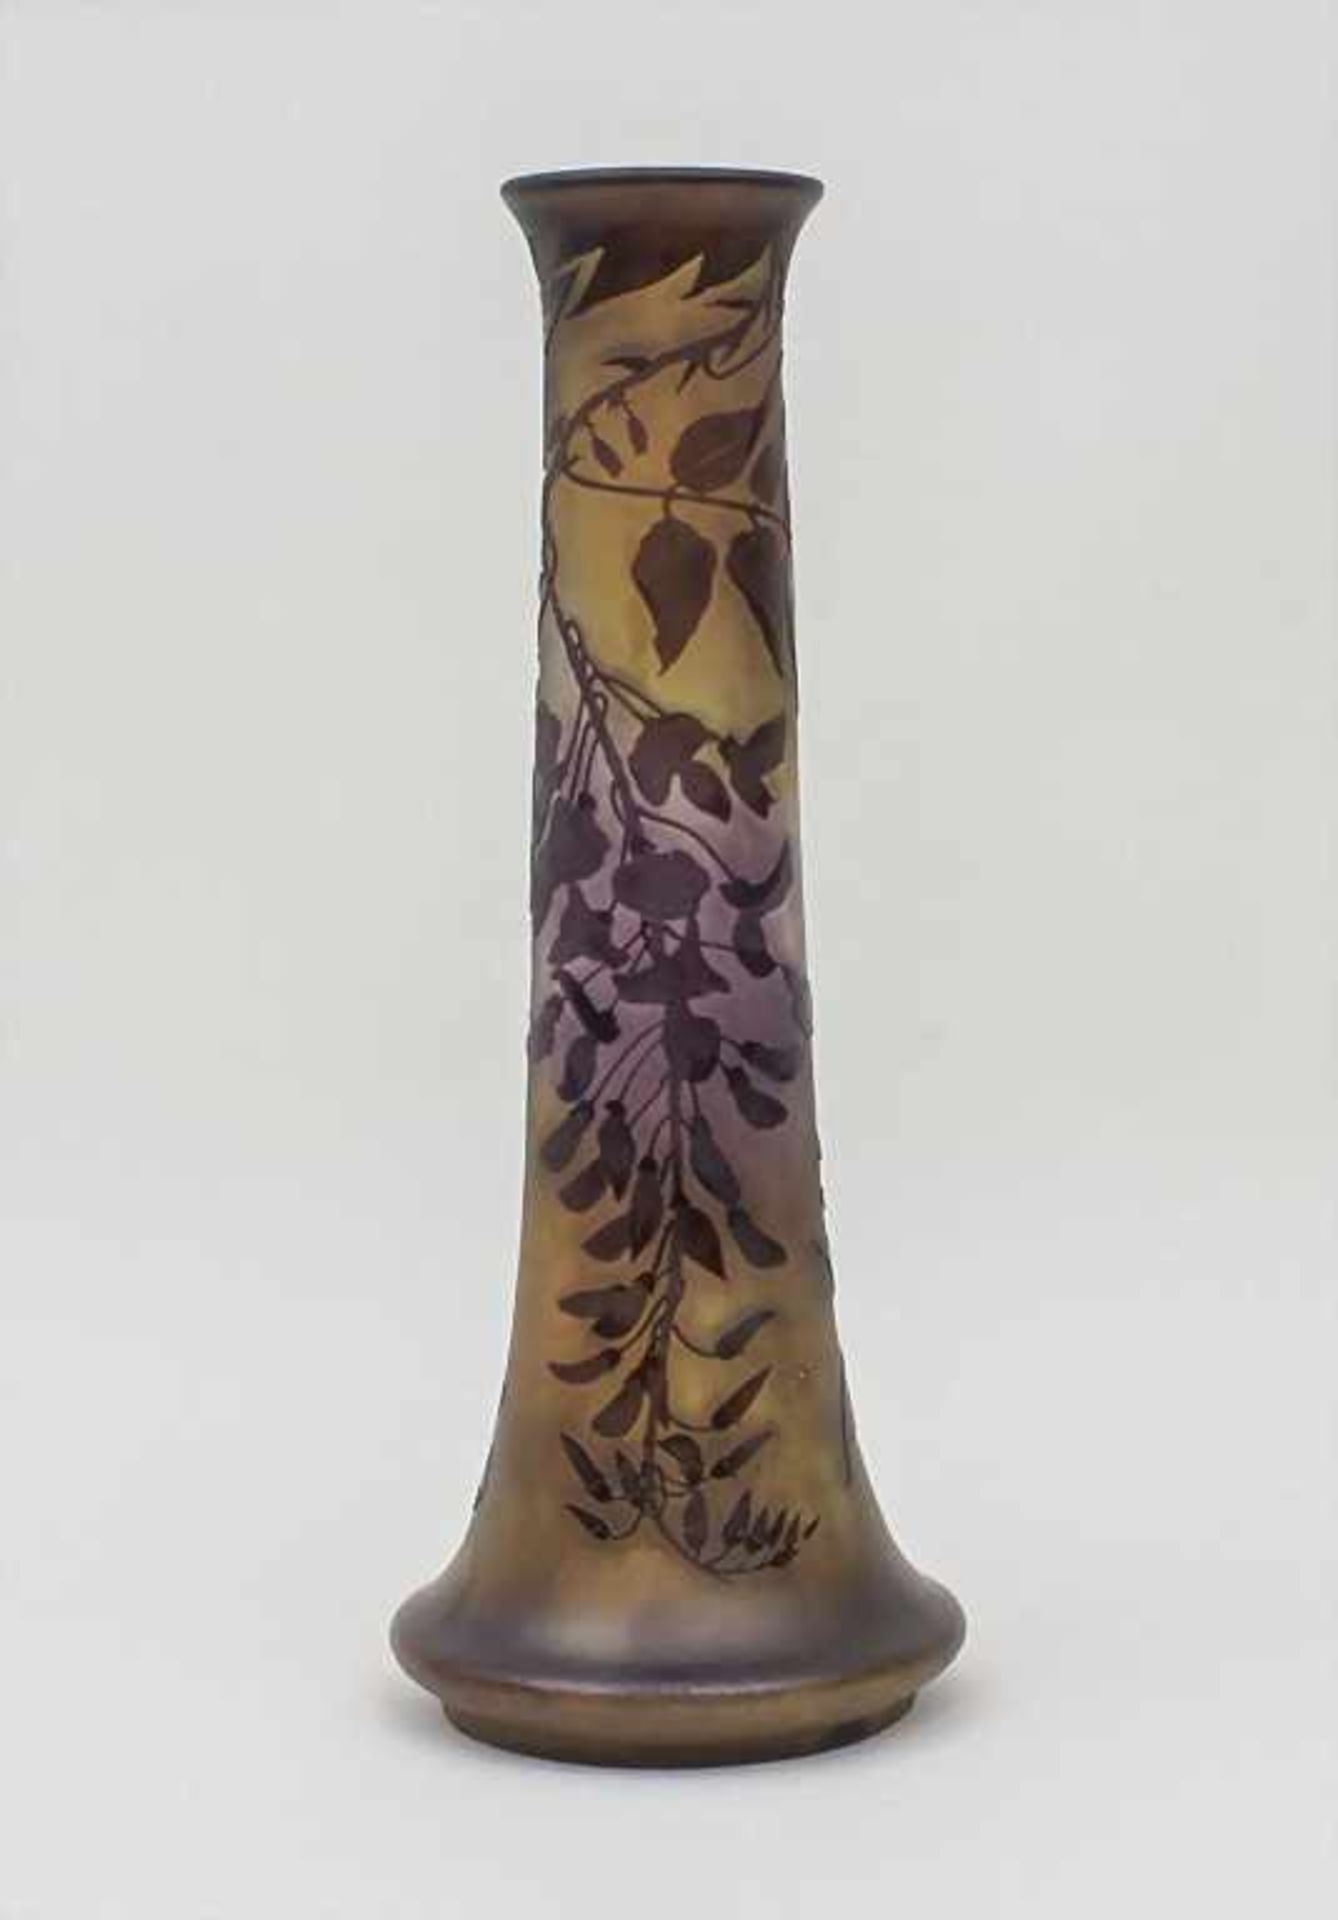 Jugendstil Vase / Art Nouveau Vase, Emile Gallé, École de Nancy, um 1900 farbloses Glas, innen